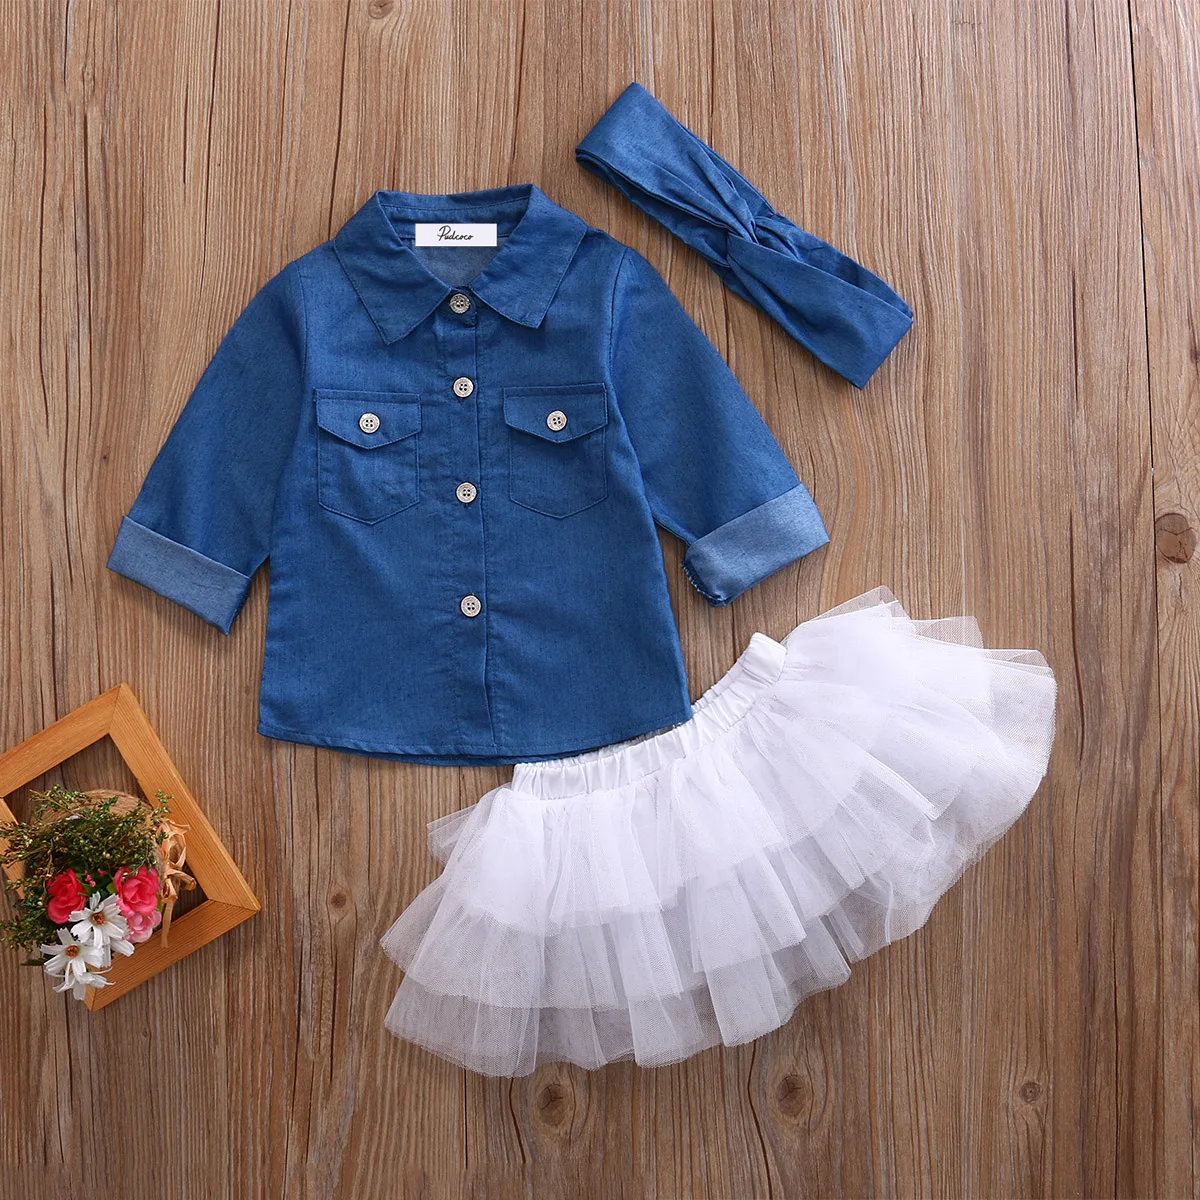 Комплекты летней одежды для маленьких девочек Одежда для маленьких девочек Джинсовая рубашка Топ+ юбка-пачка+ повязка на голову комплект из 3 предметов От 0 до 5 лет